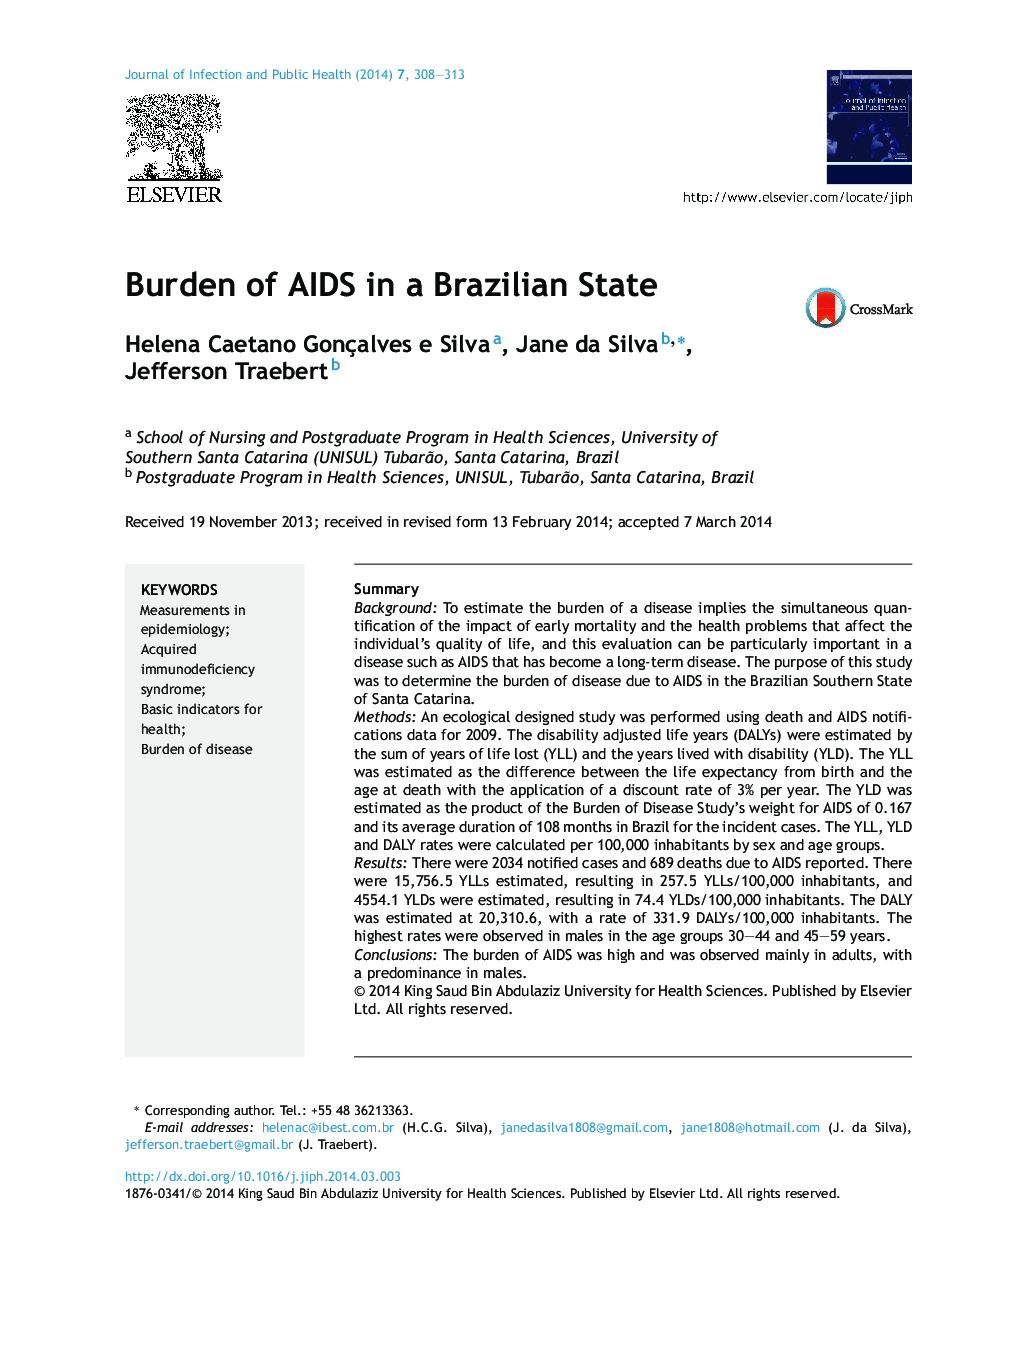 Burden of AIDS in a Brazilian State